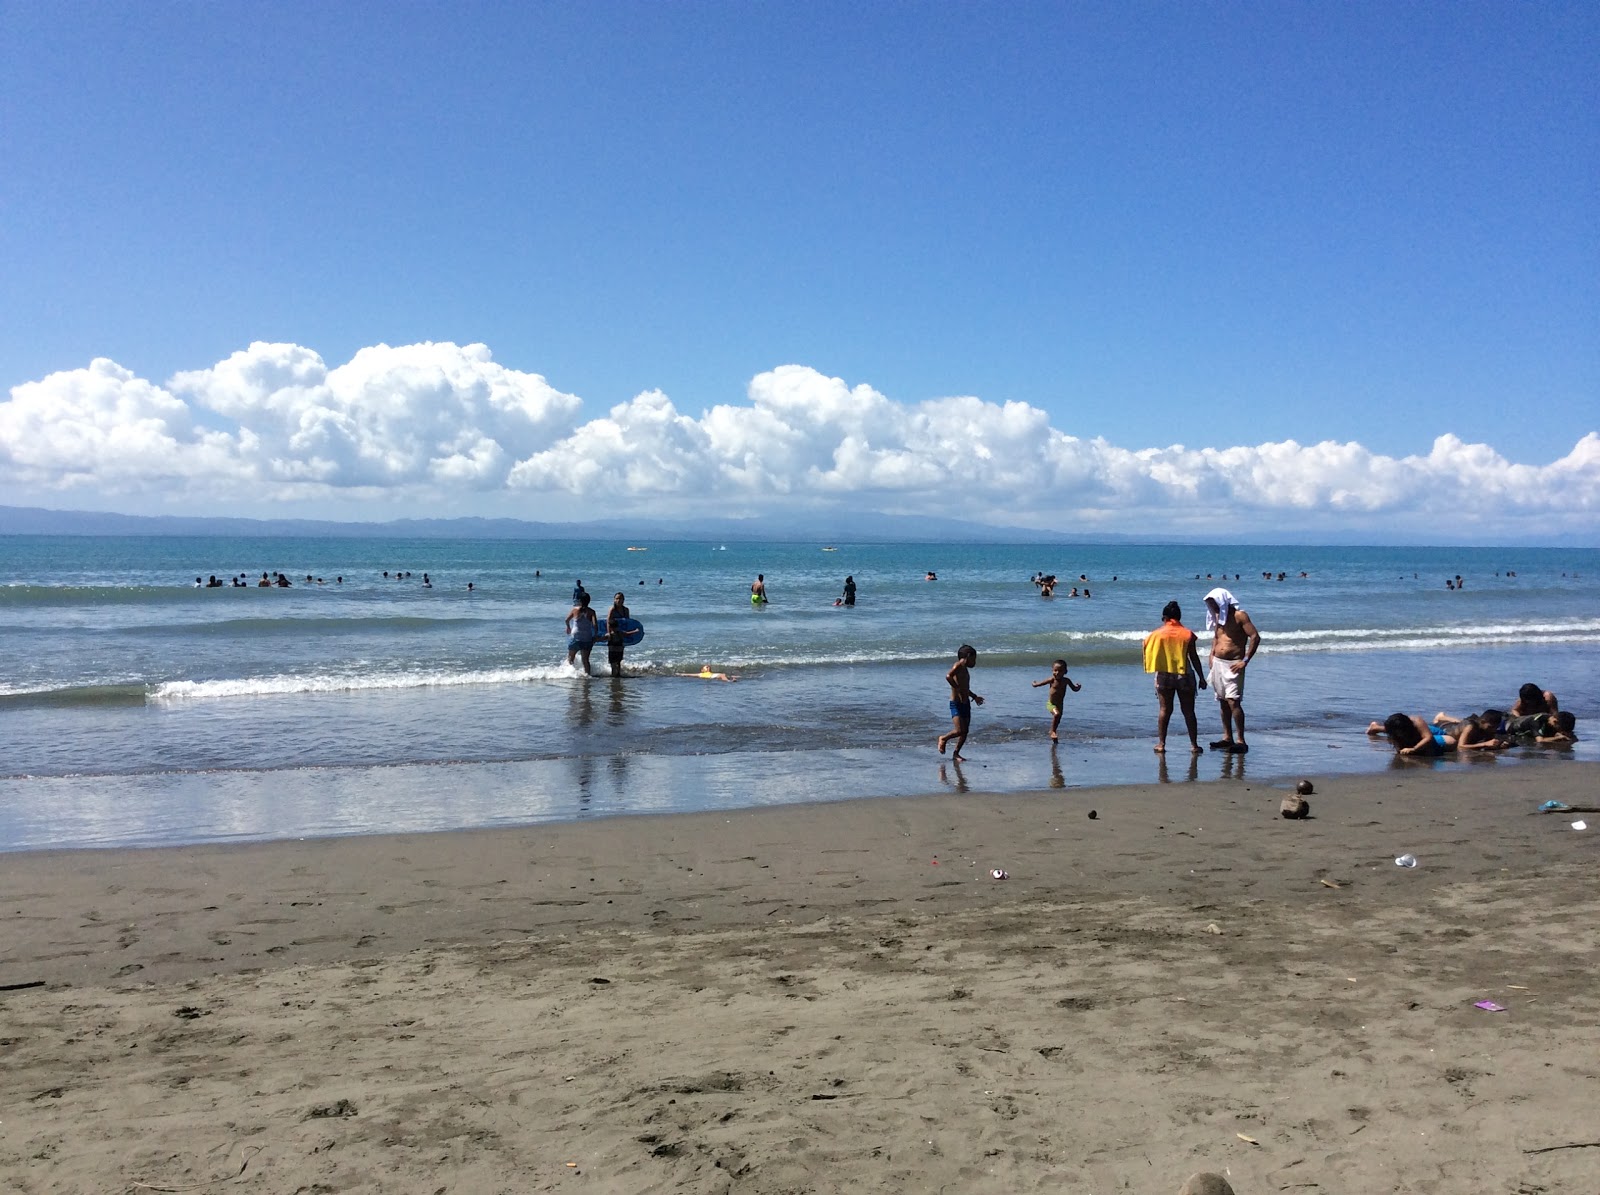 Playa Zancudo'in fotoğrafı kahverengi kum yüzey ile